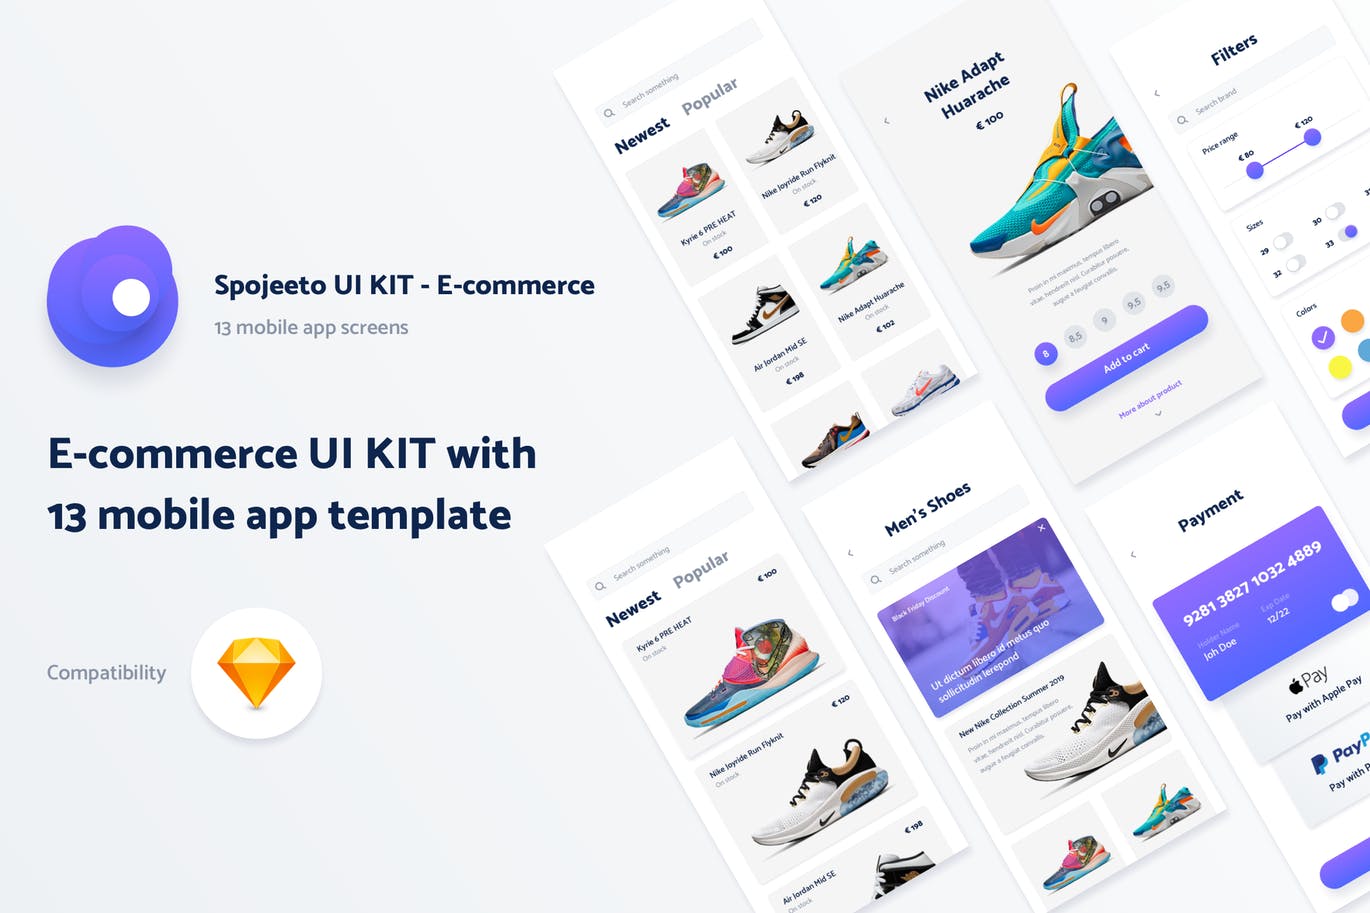 运动装备网上商城APP应用UI设计素材库精选套件 Spojeeto E-commerce Mobile App UI Kit插图